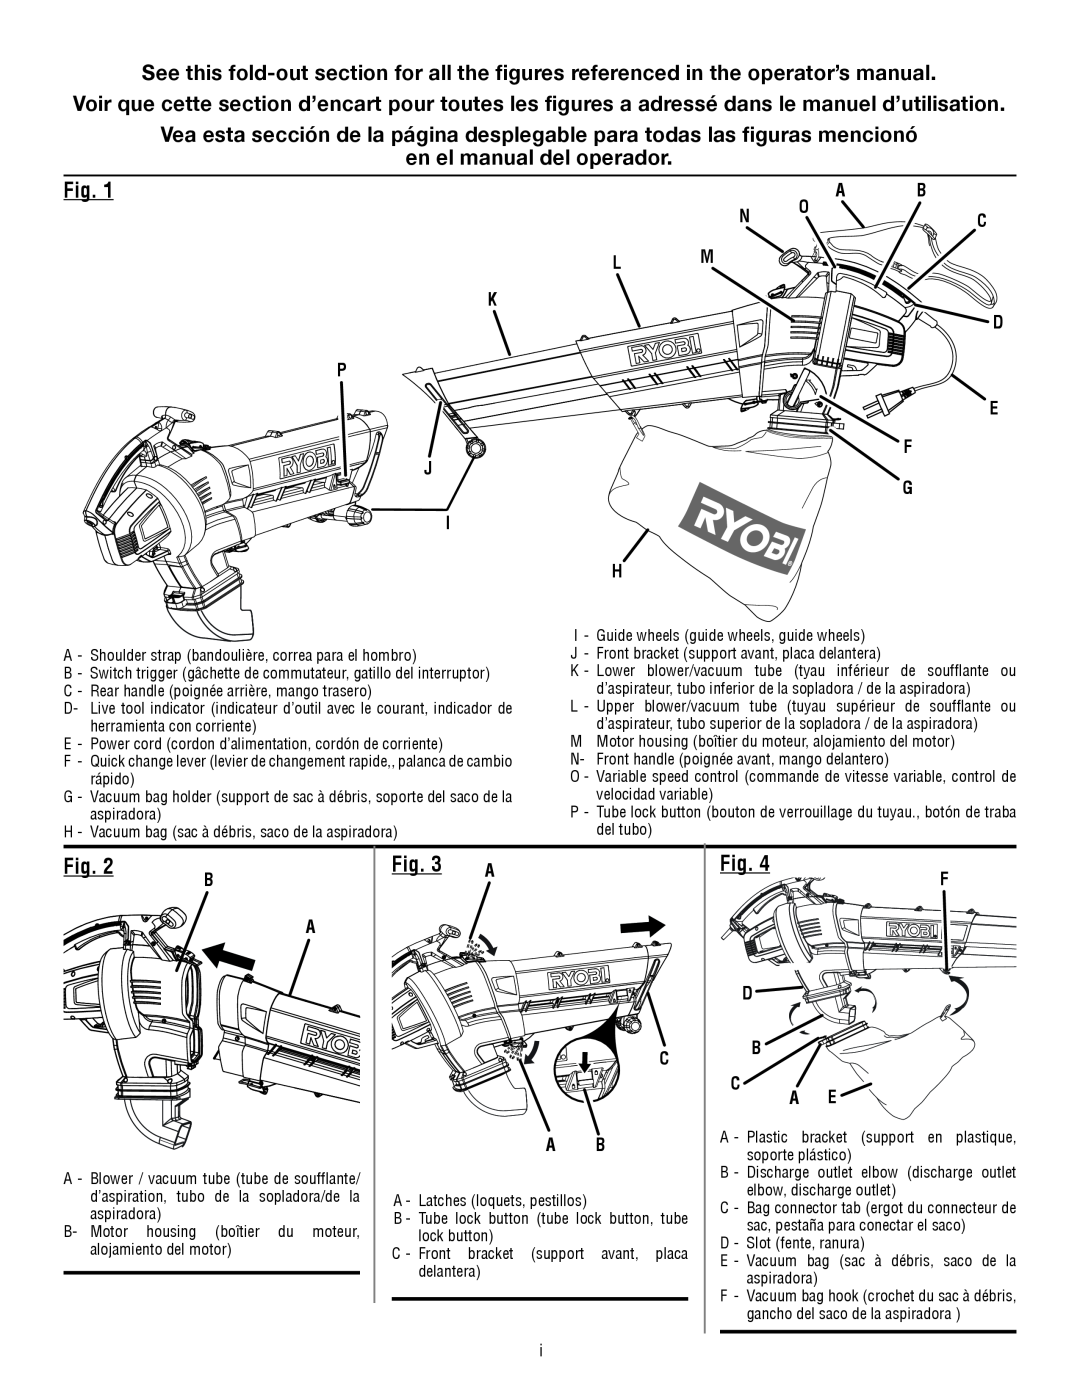 Ryobi RY42110 manuel dutilisation en el manual del operador 